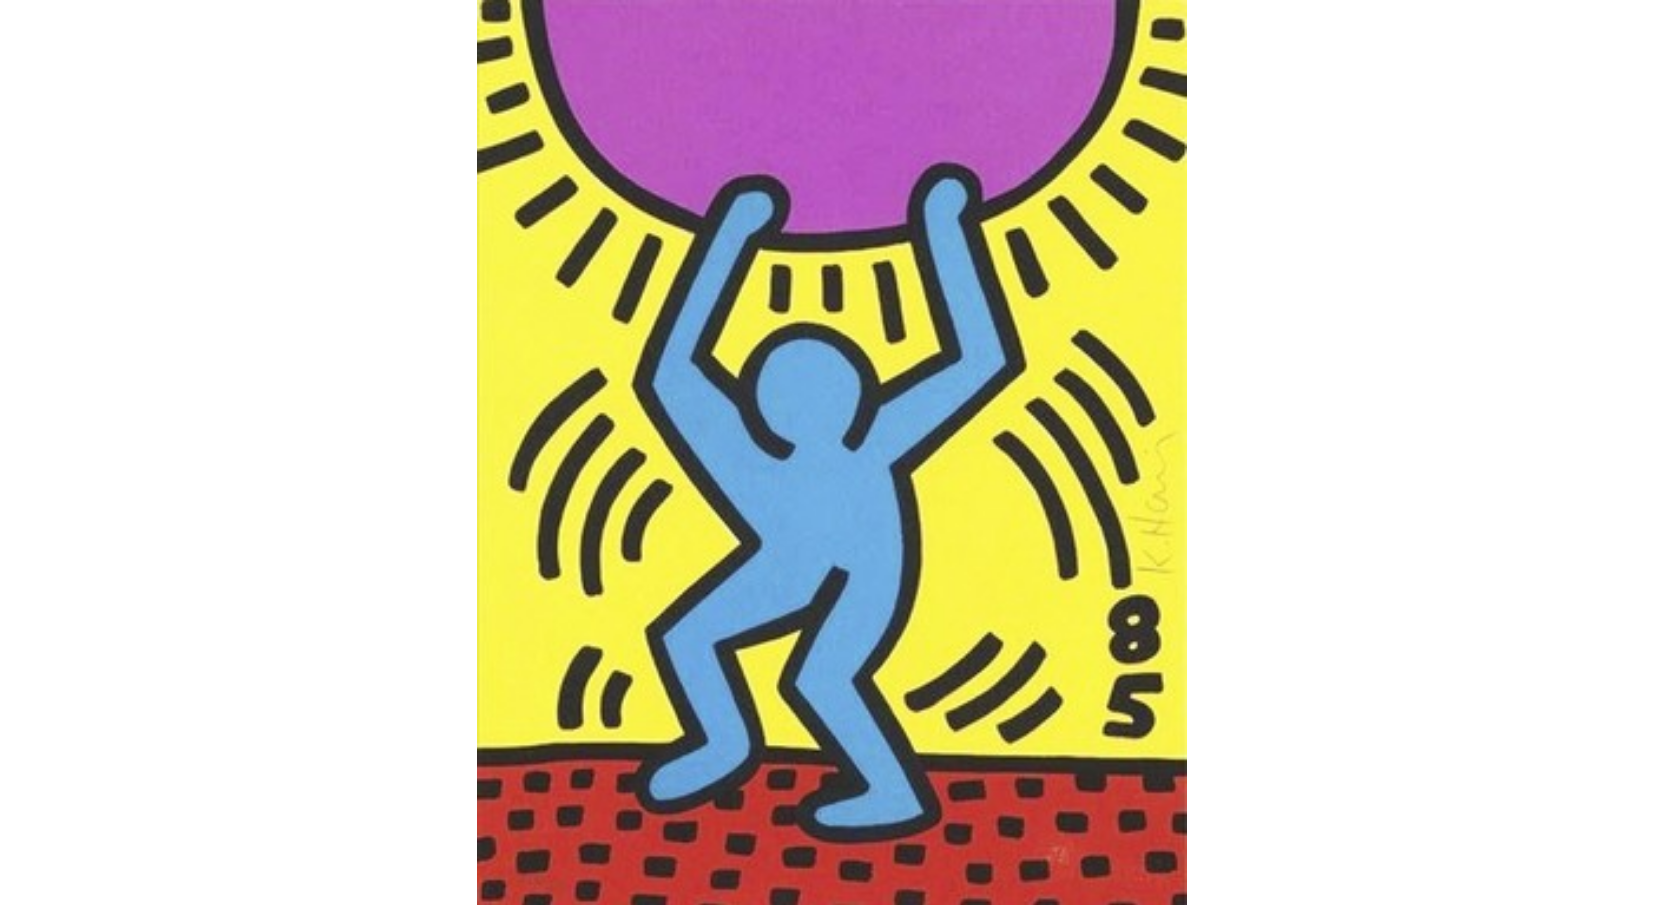 keith-haris-desenho-nova-york-anos-80-aids-dionisio-arte (18)